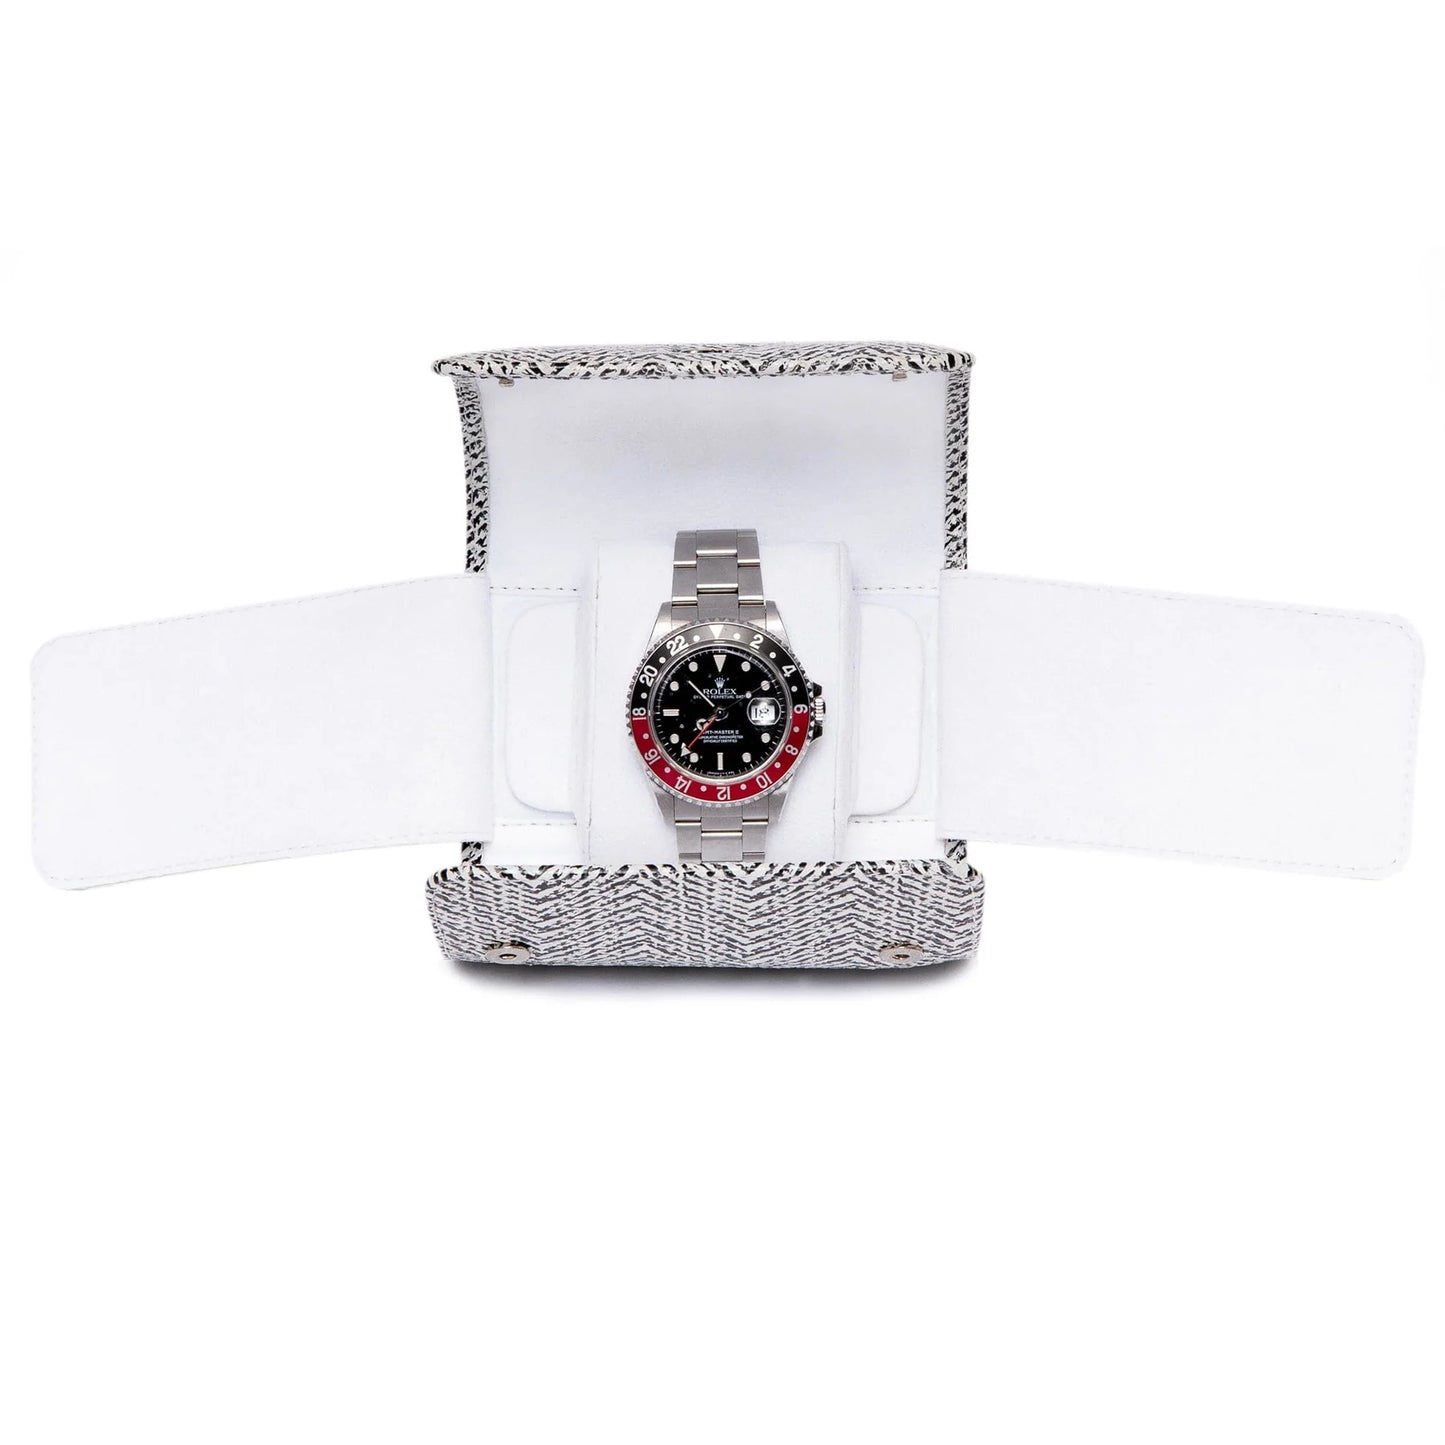 Marlow Single Watch Roll - White